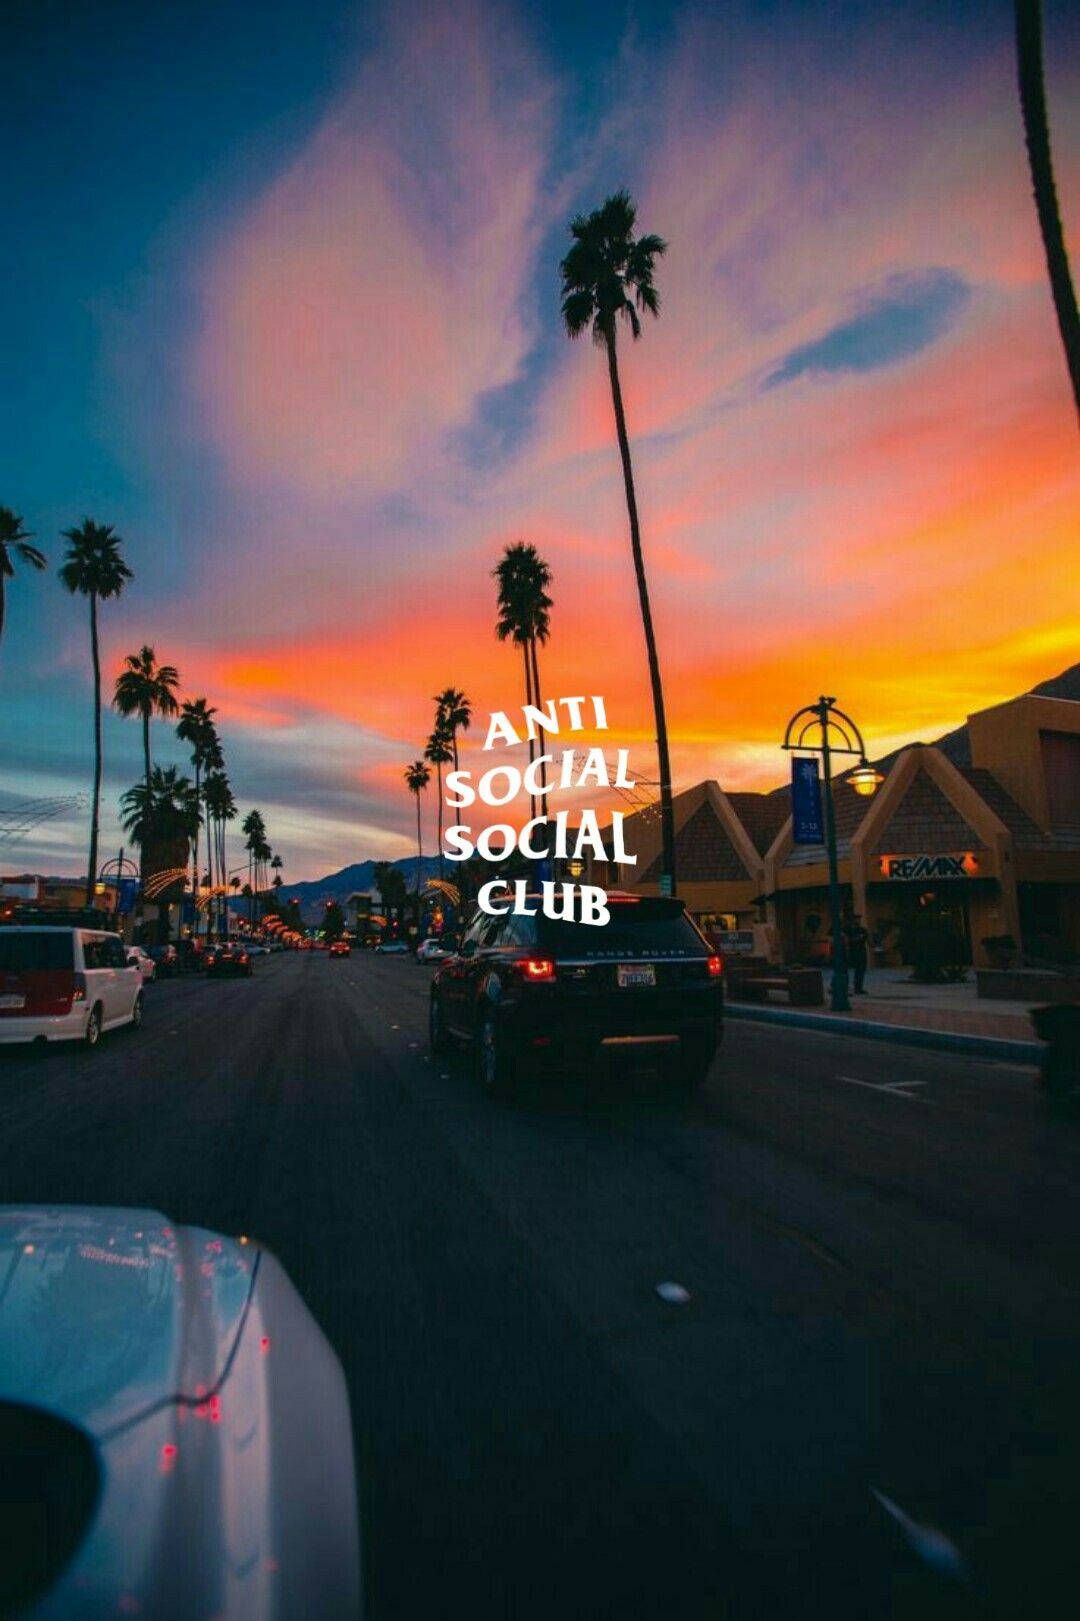 Download Anti Social Social Club Sunset Road Wallpaper